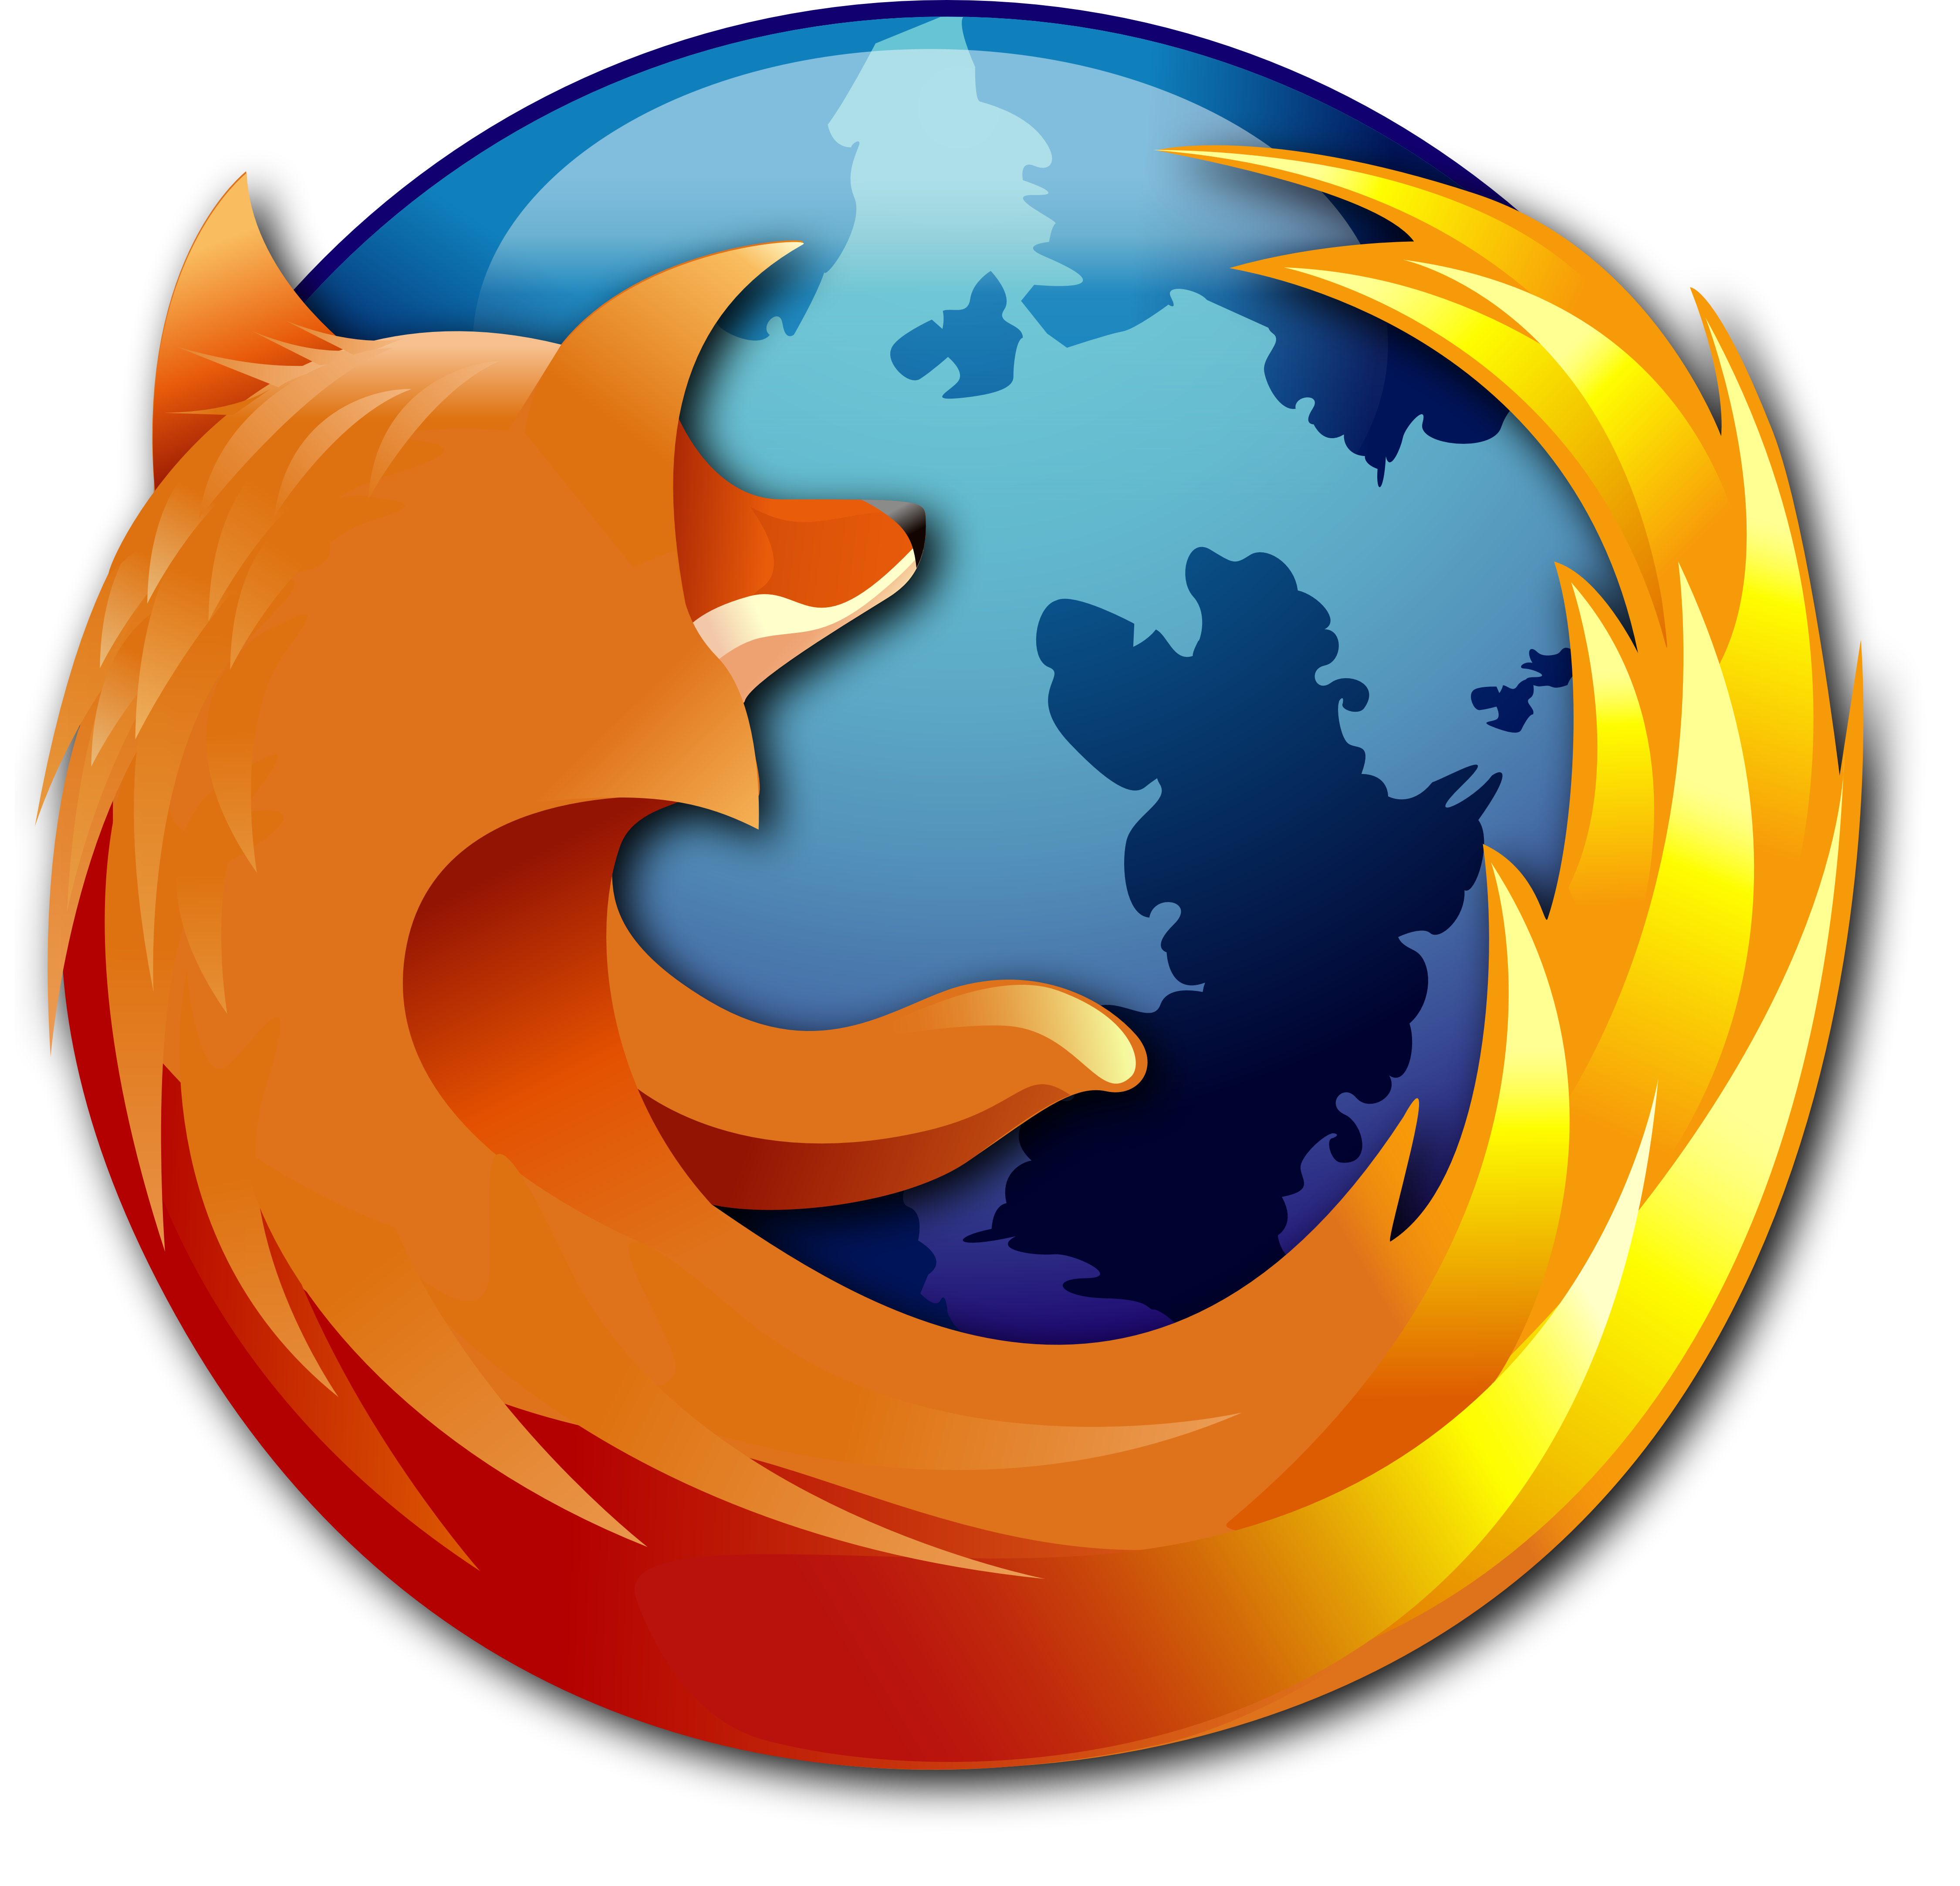 [UpdateJanuary2015] Free Download Firefox 36.0 Beta 4 